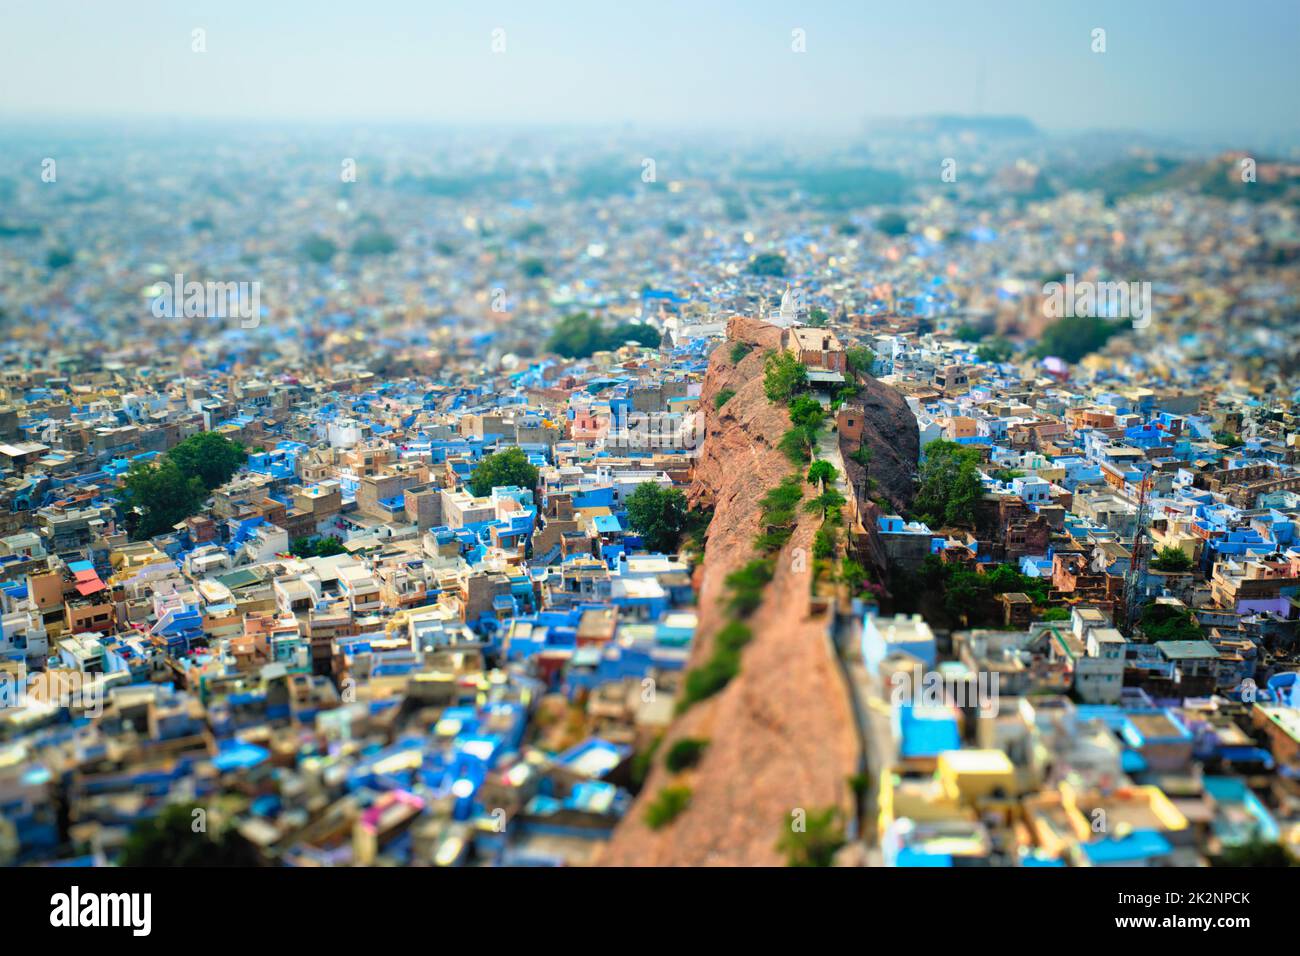 Vue aérienne de la ville bleue de Jodhpur. Jodphur, Rajasthan, Inde Banque D'Images